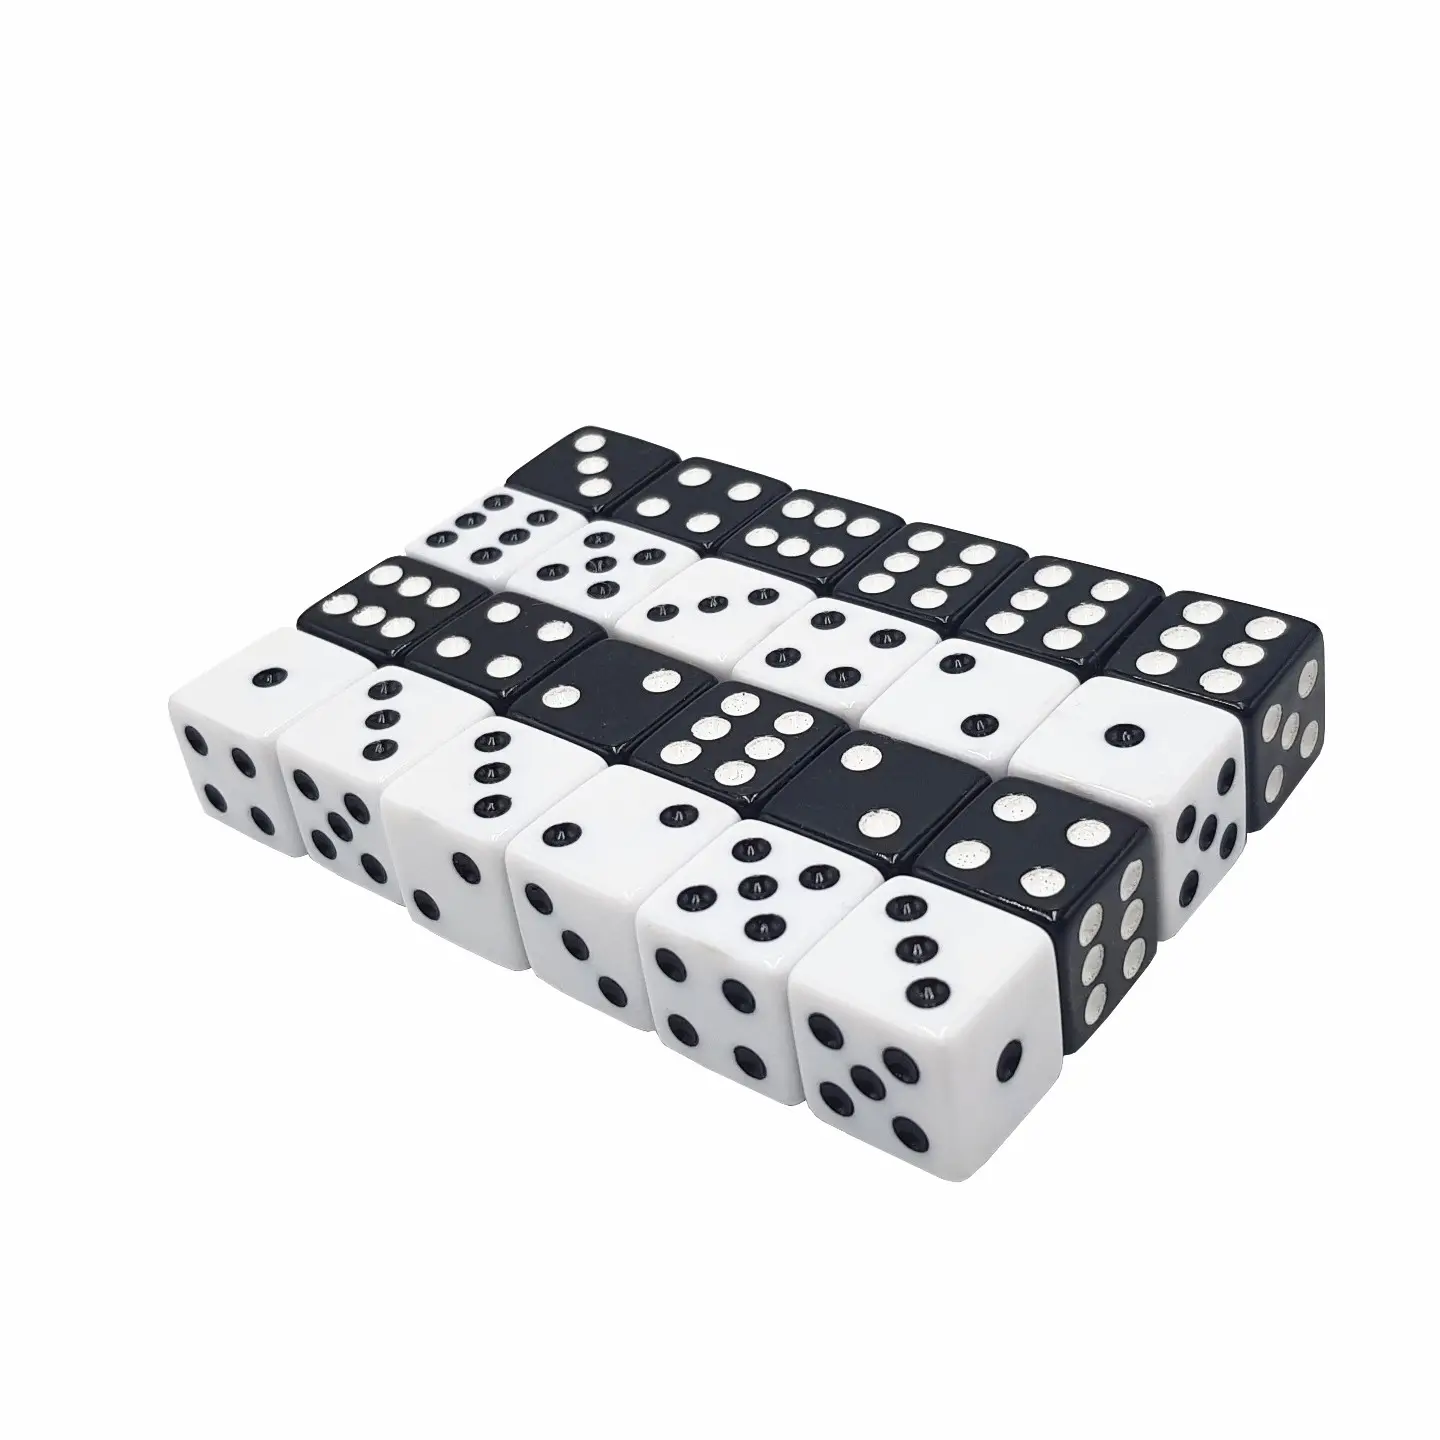 16 мм D6 белые квадратные игральные кости с черными точками, акриловые полигедральные игральные кости для казино